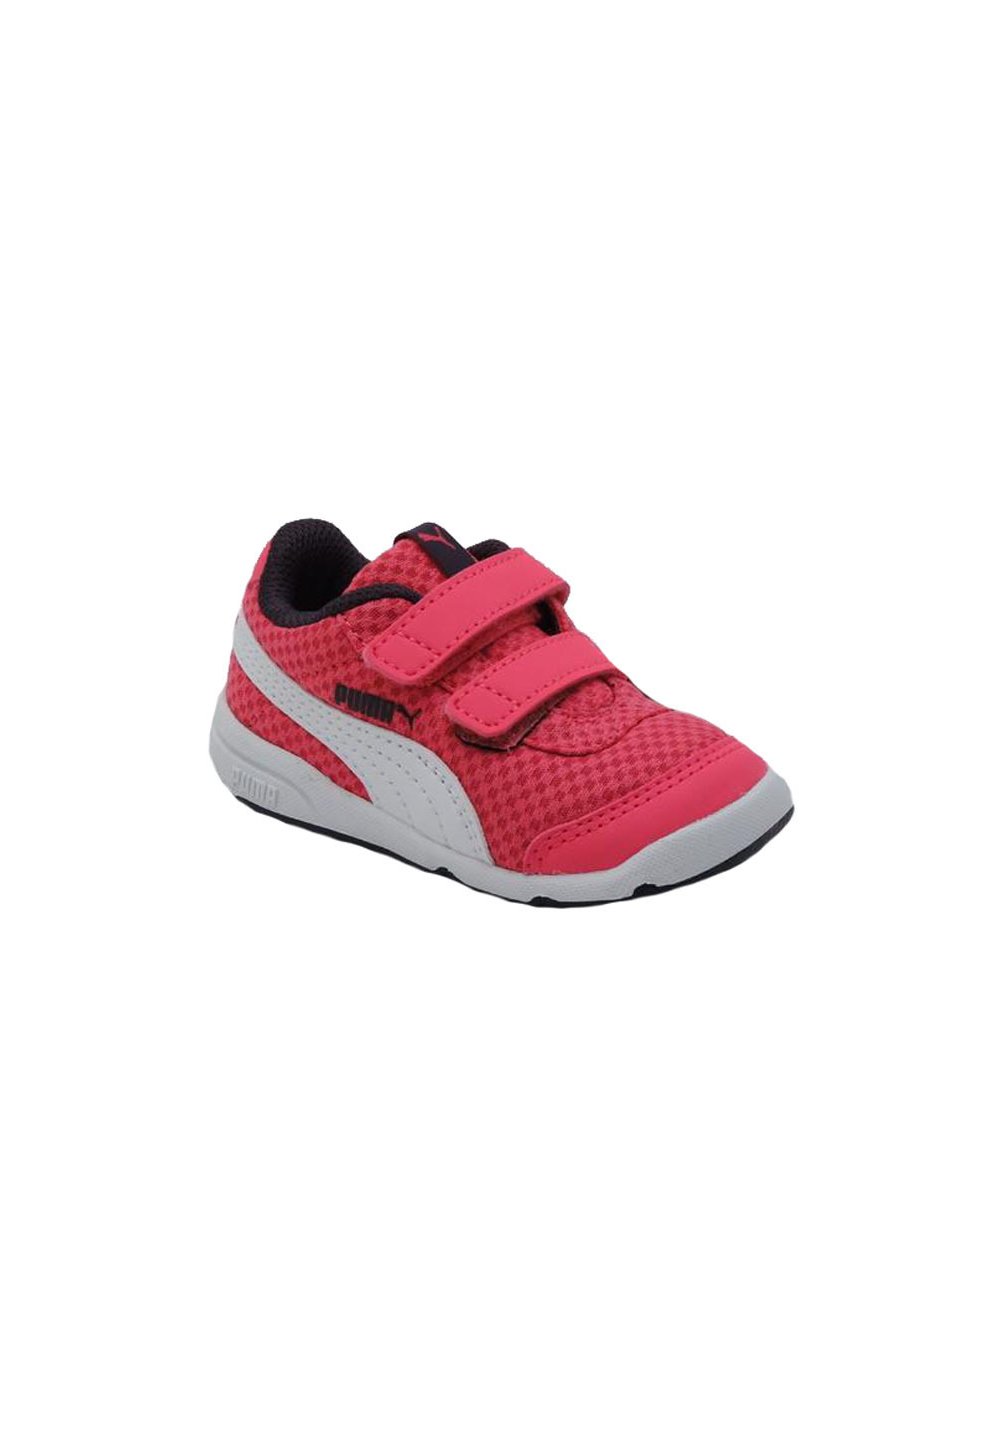 Pantofi sport, Puma, roz fete